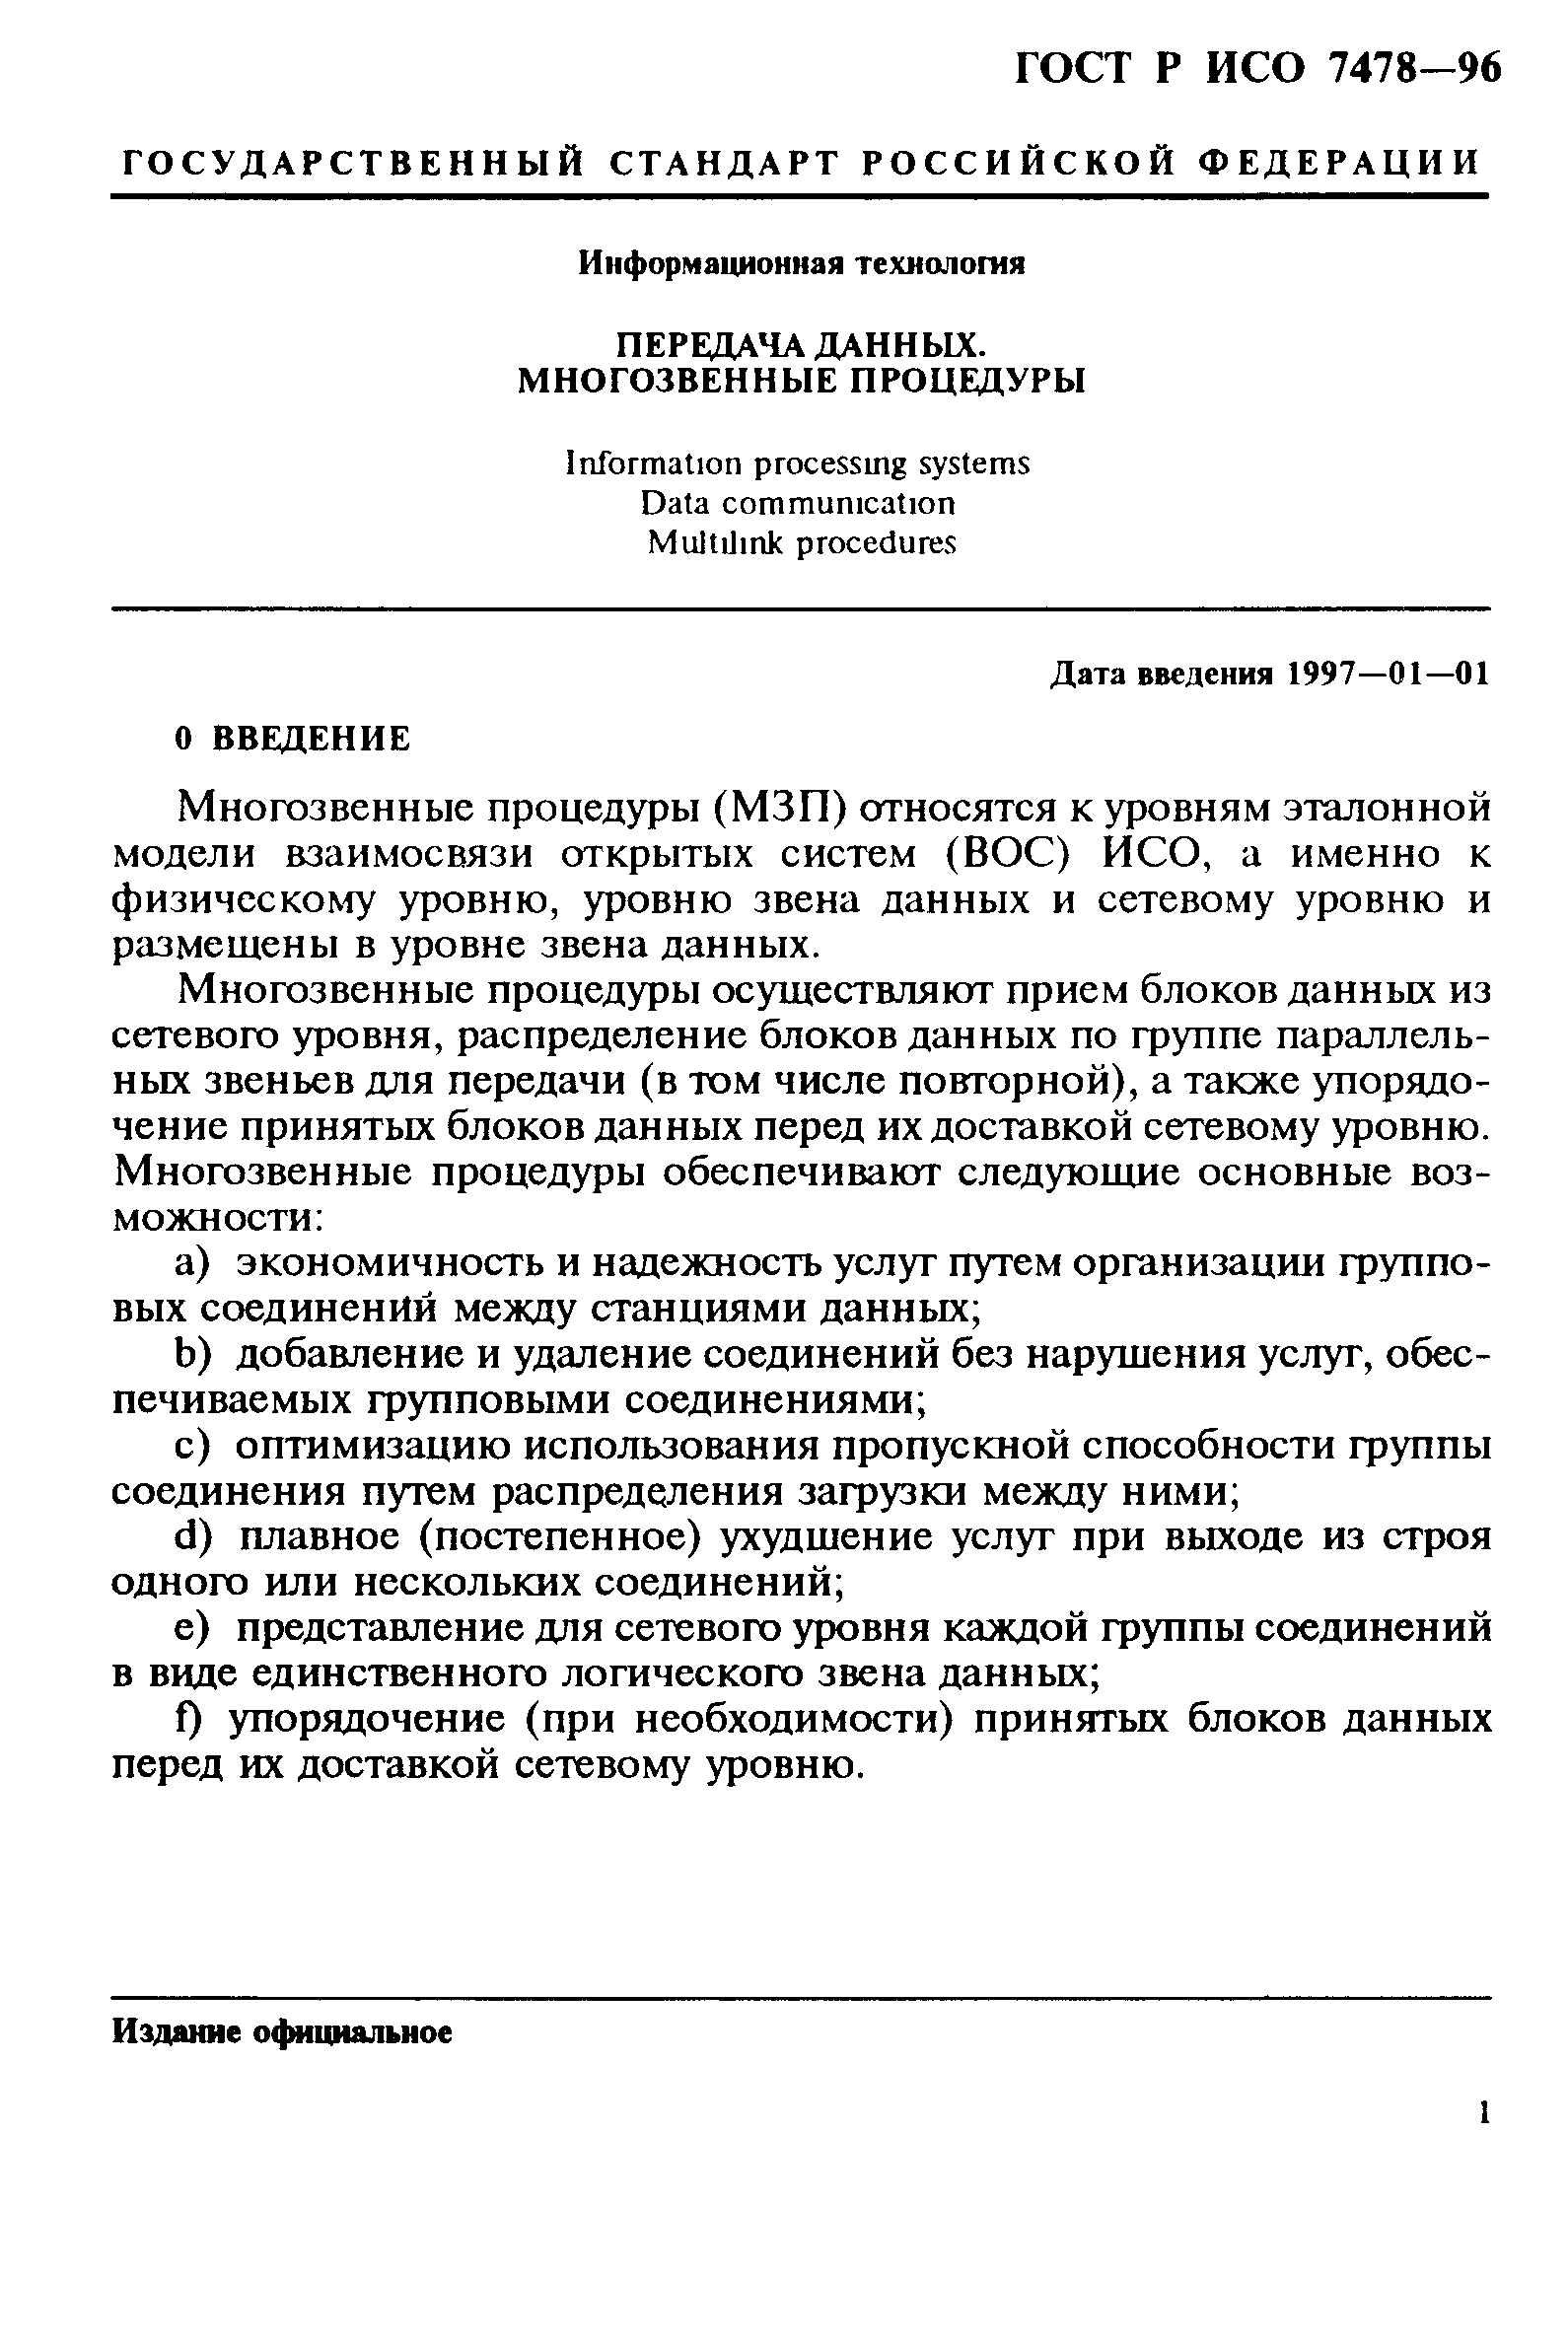 ГОСТ Р ИСО 7478-96